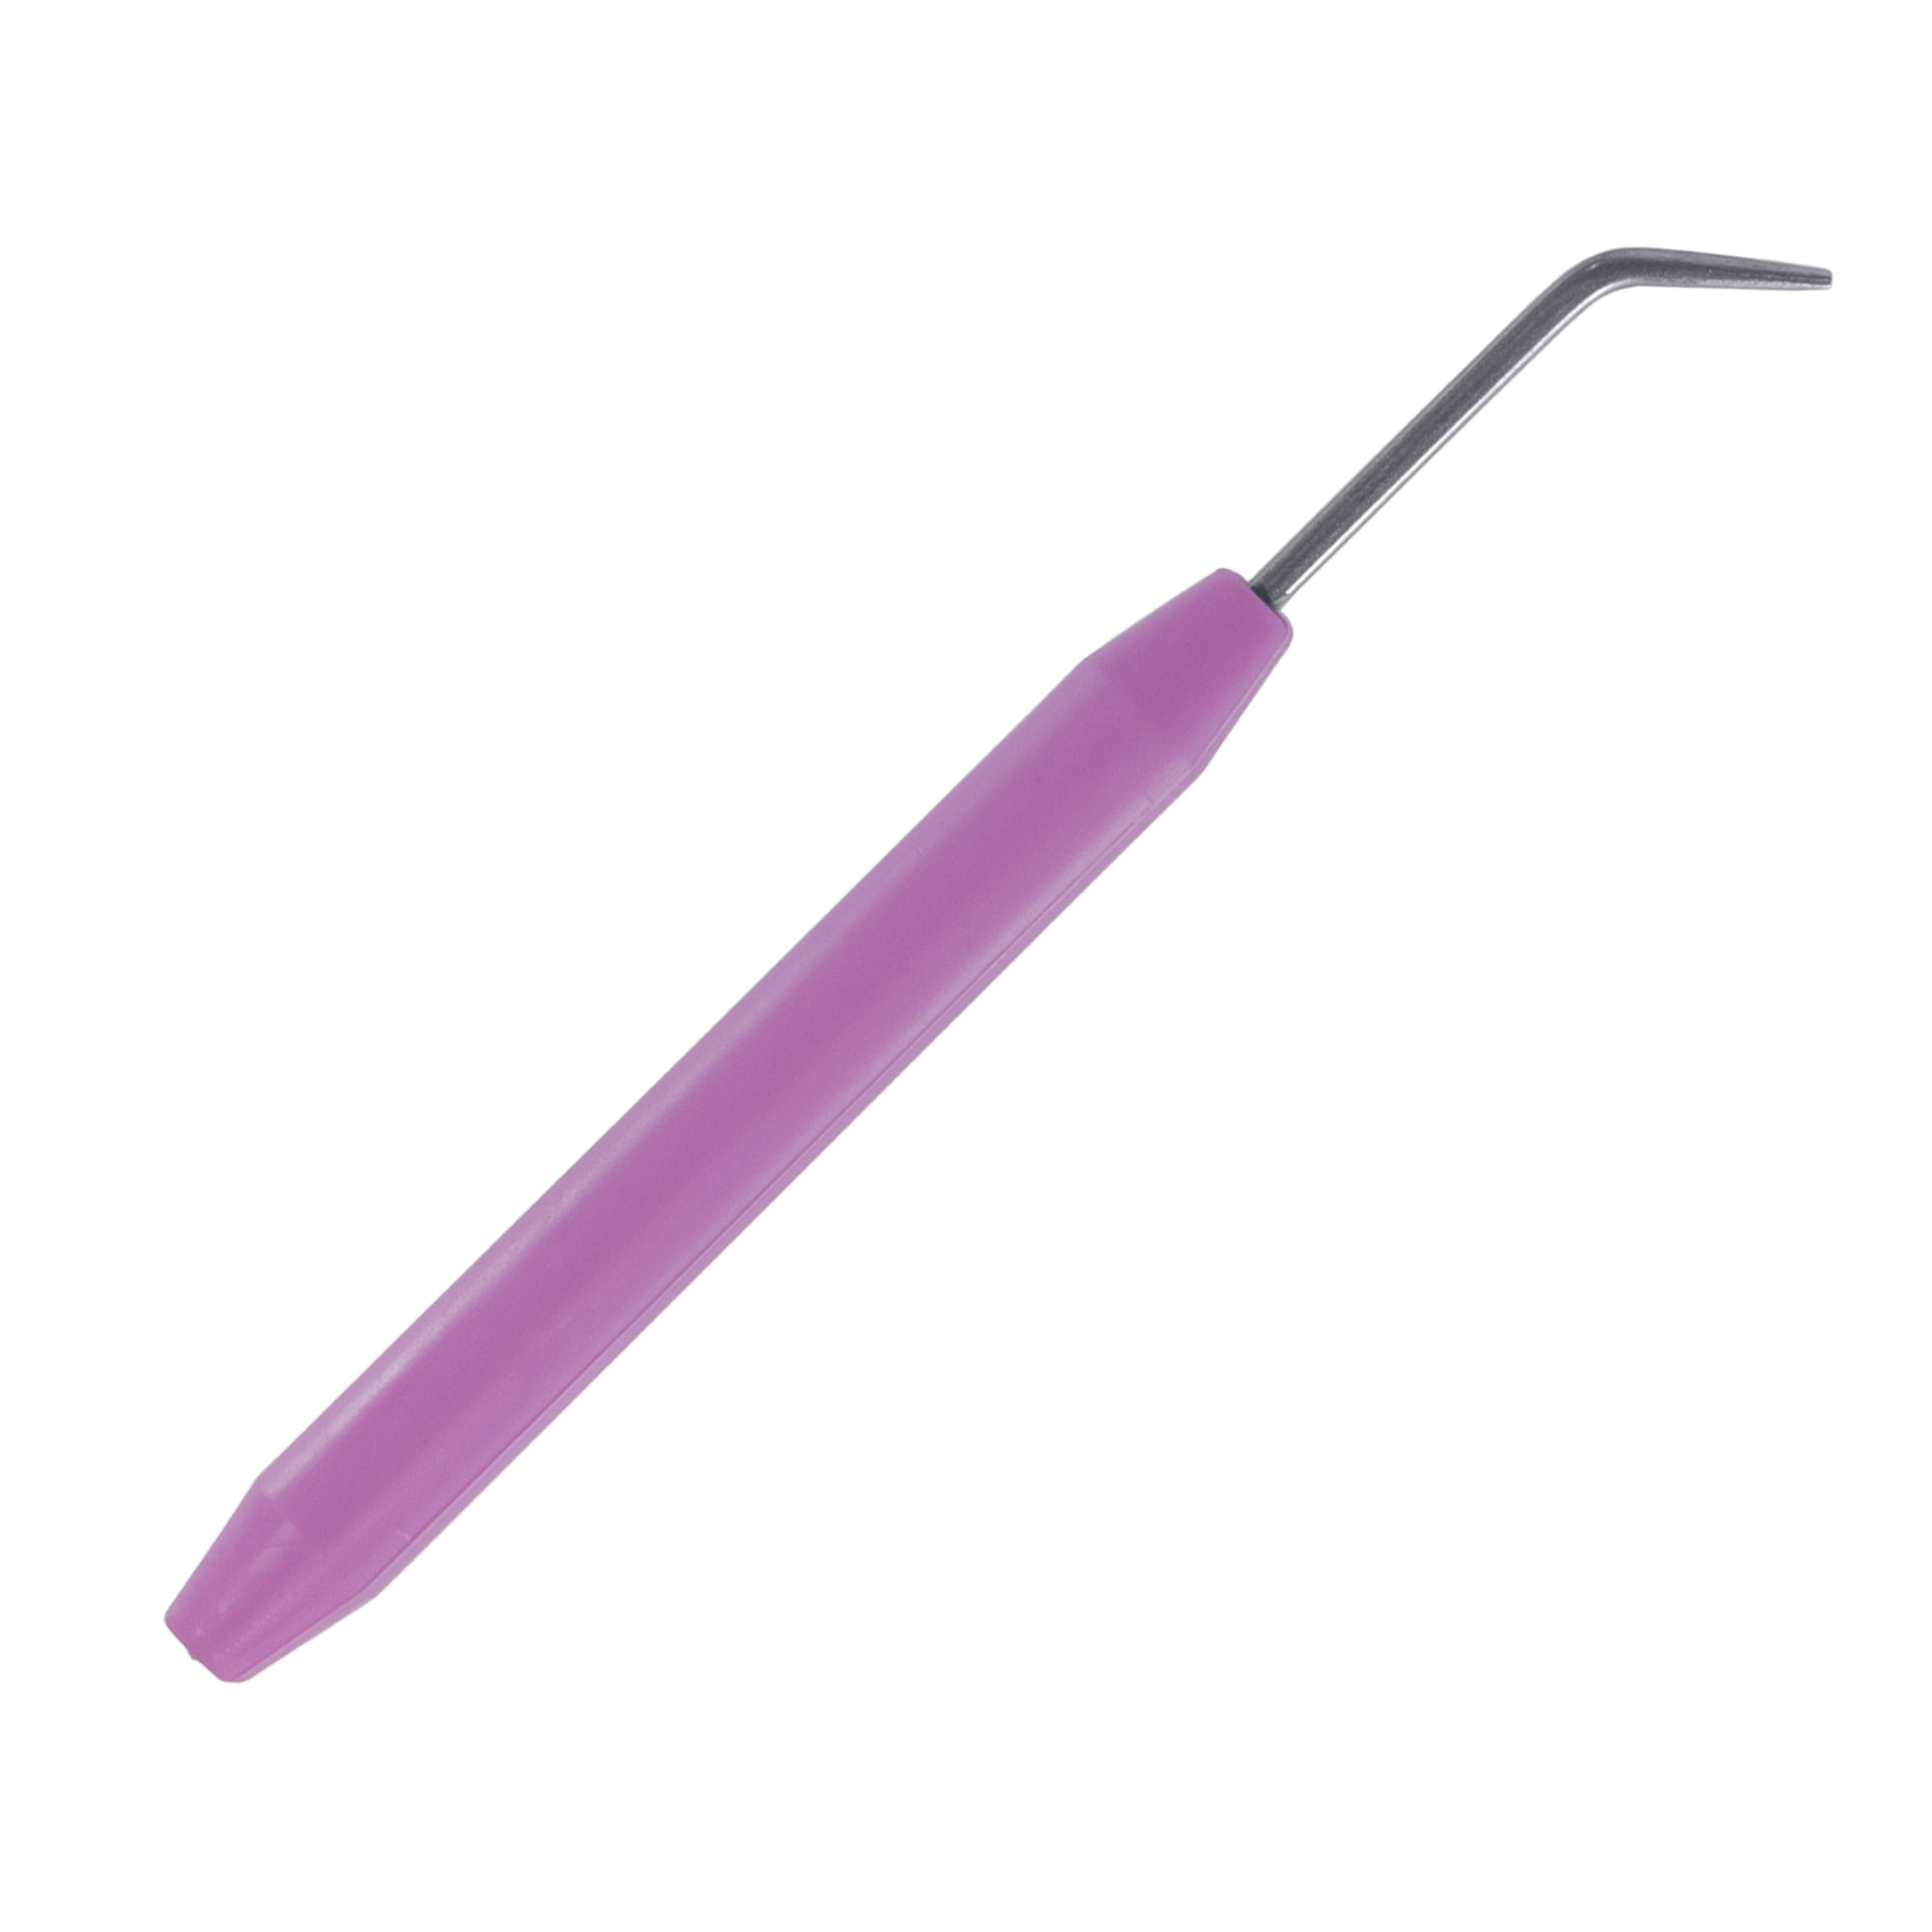 LOOM PICK /& YARN needle purple